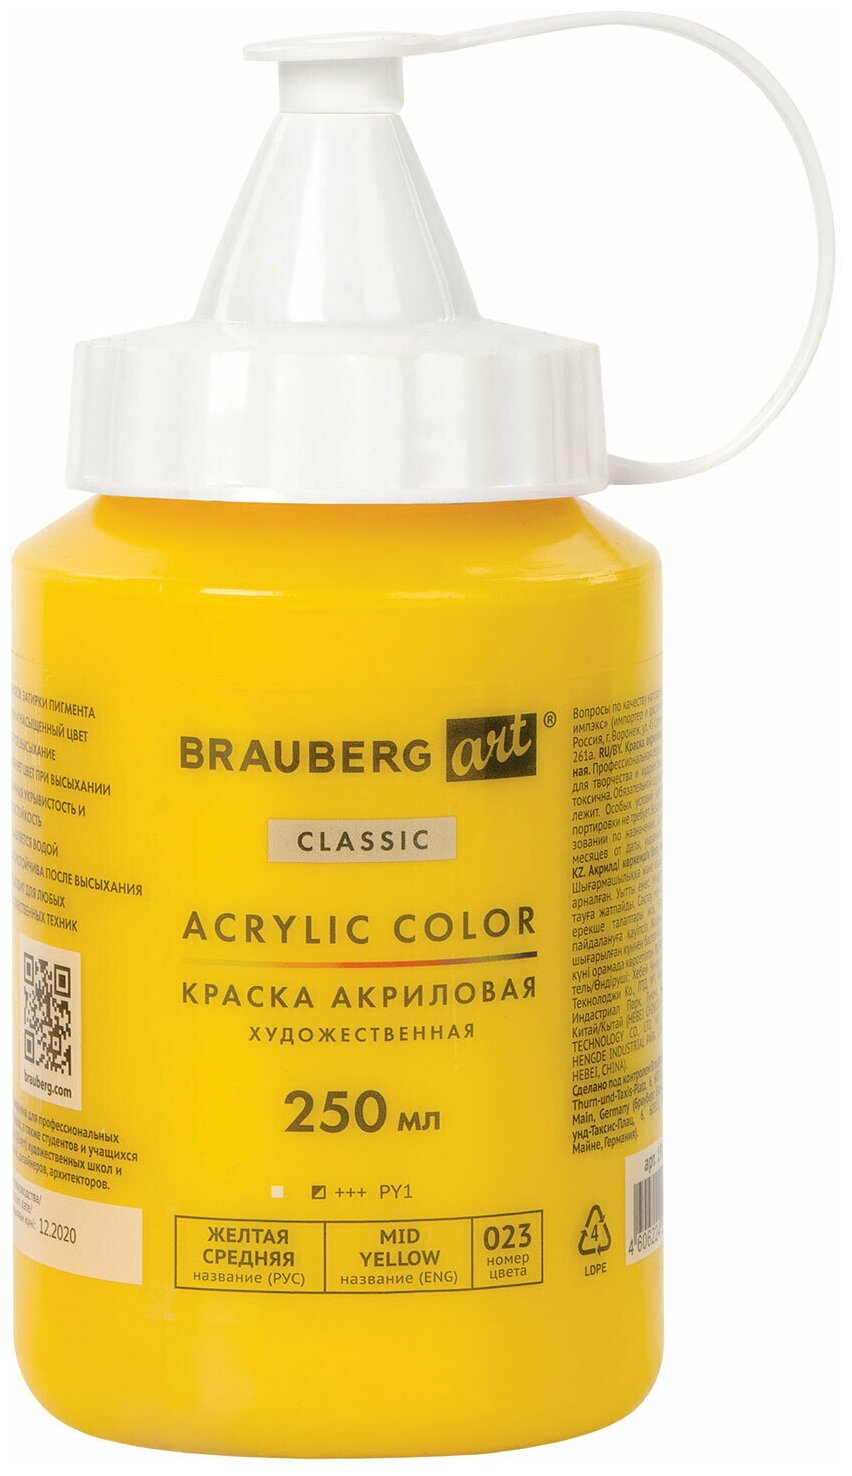 Комплект 2 шт, Краска акриловая художественная BRAUBERG ART CLASSIC, флакон 250 мл, желтая средняя, 191714